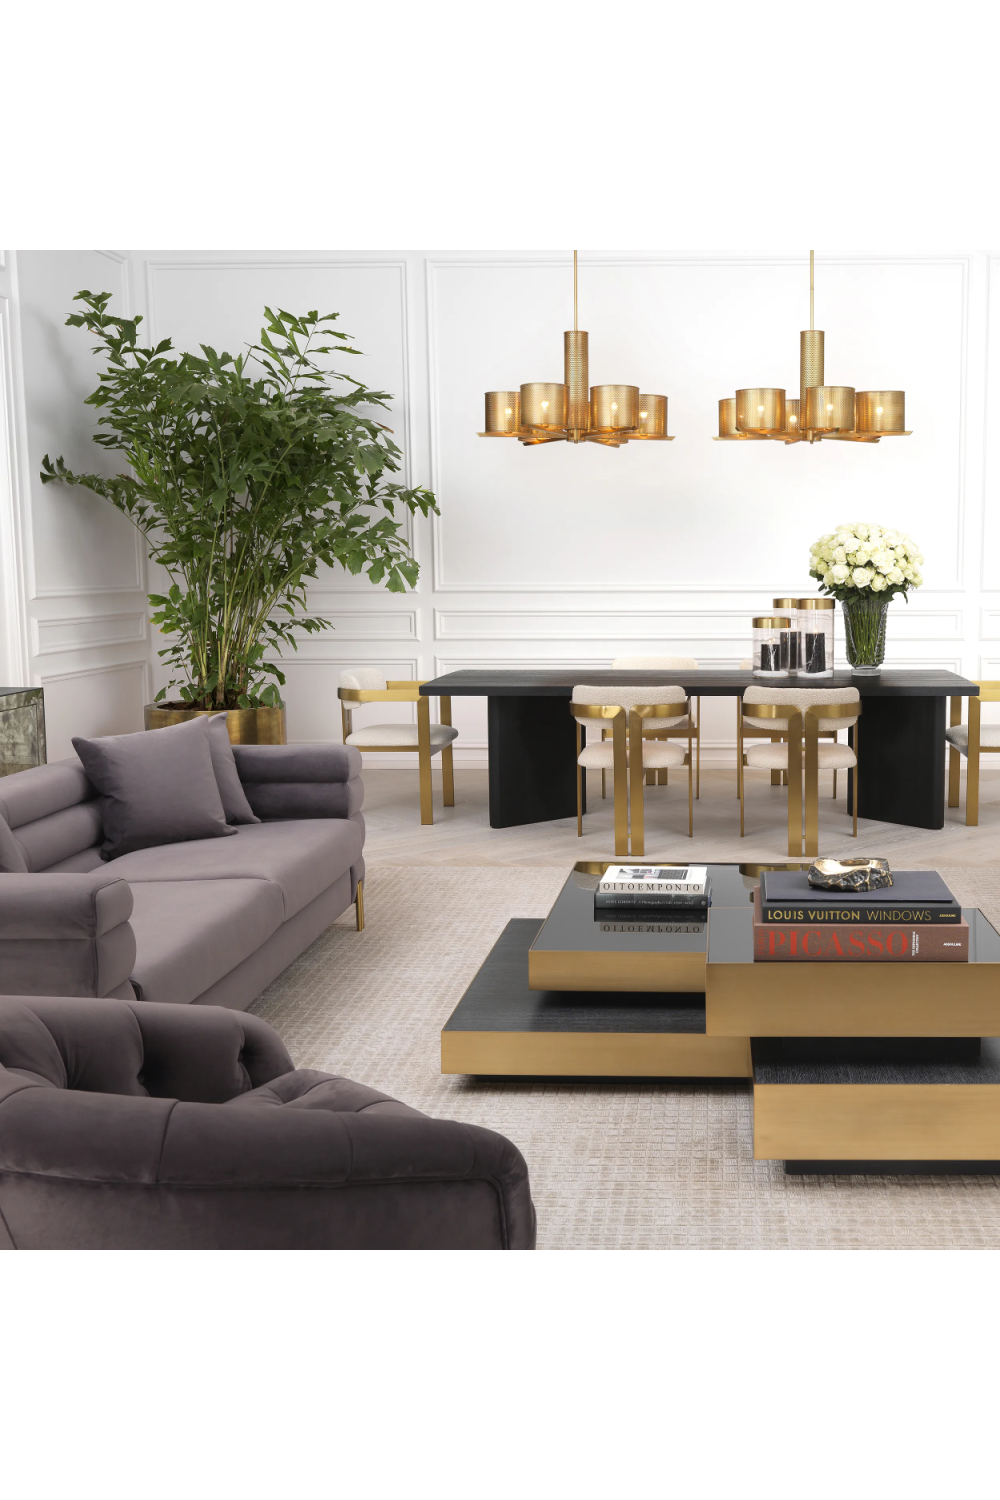 Art Deco Gray Velvet Sofa | Eichholtz York | Oroa.com